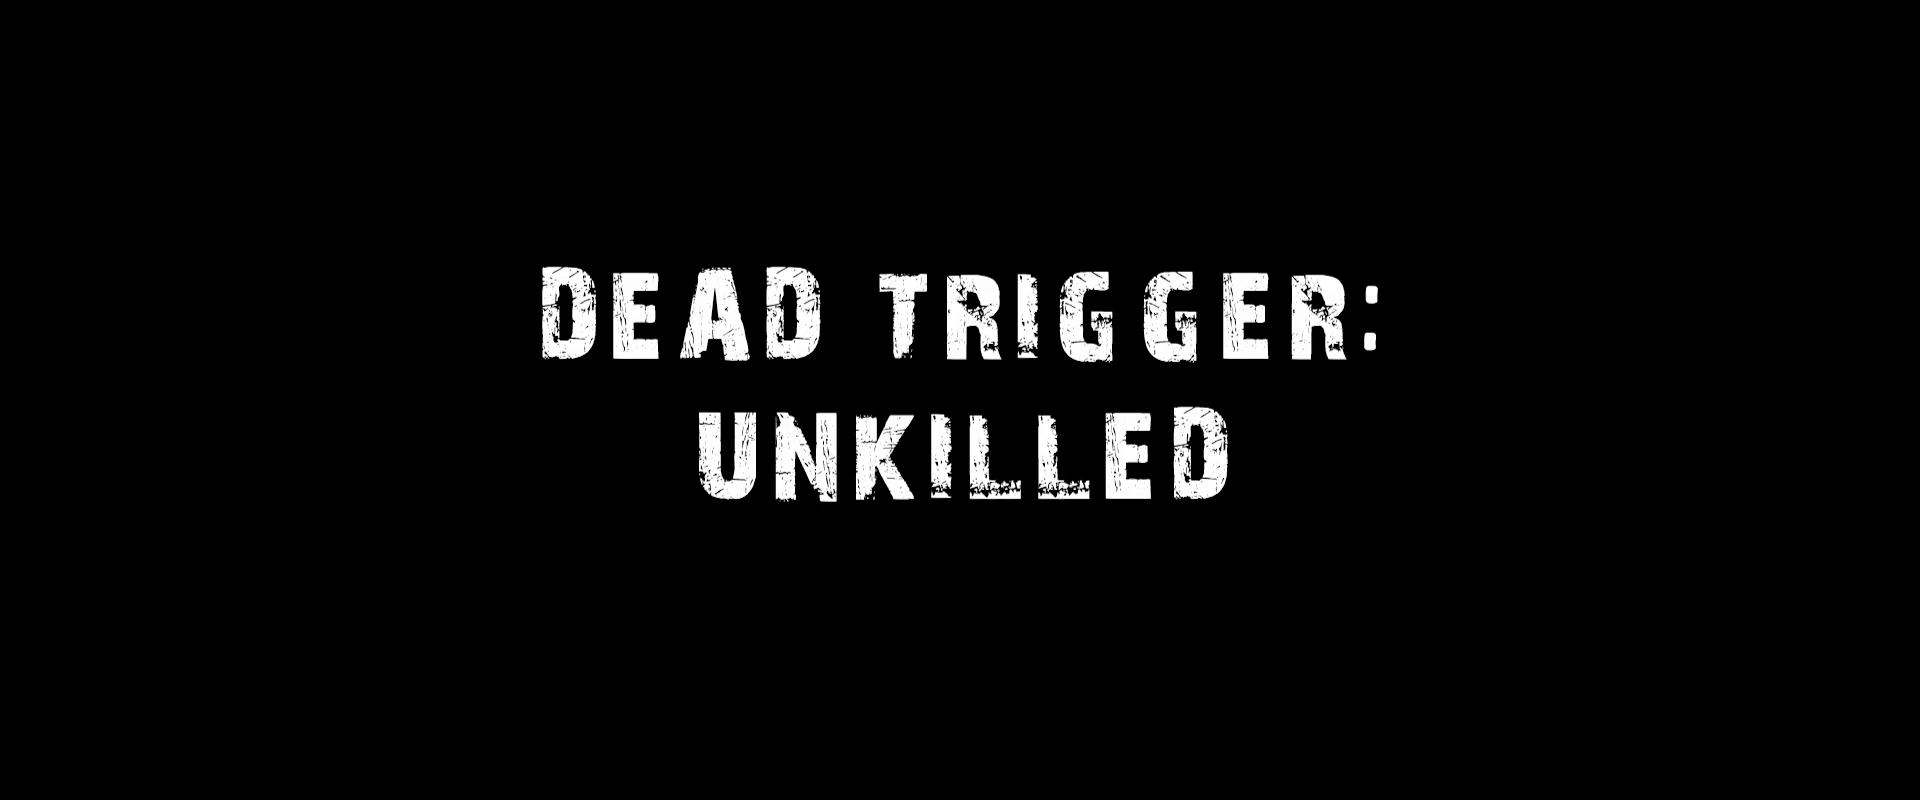 Dead Trigger background 1